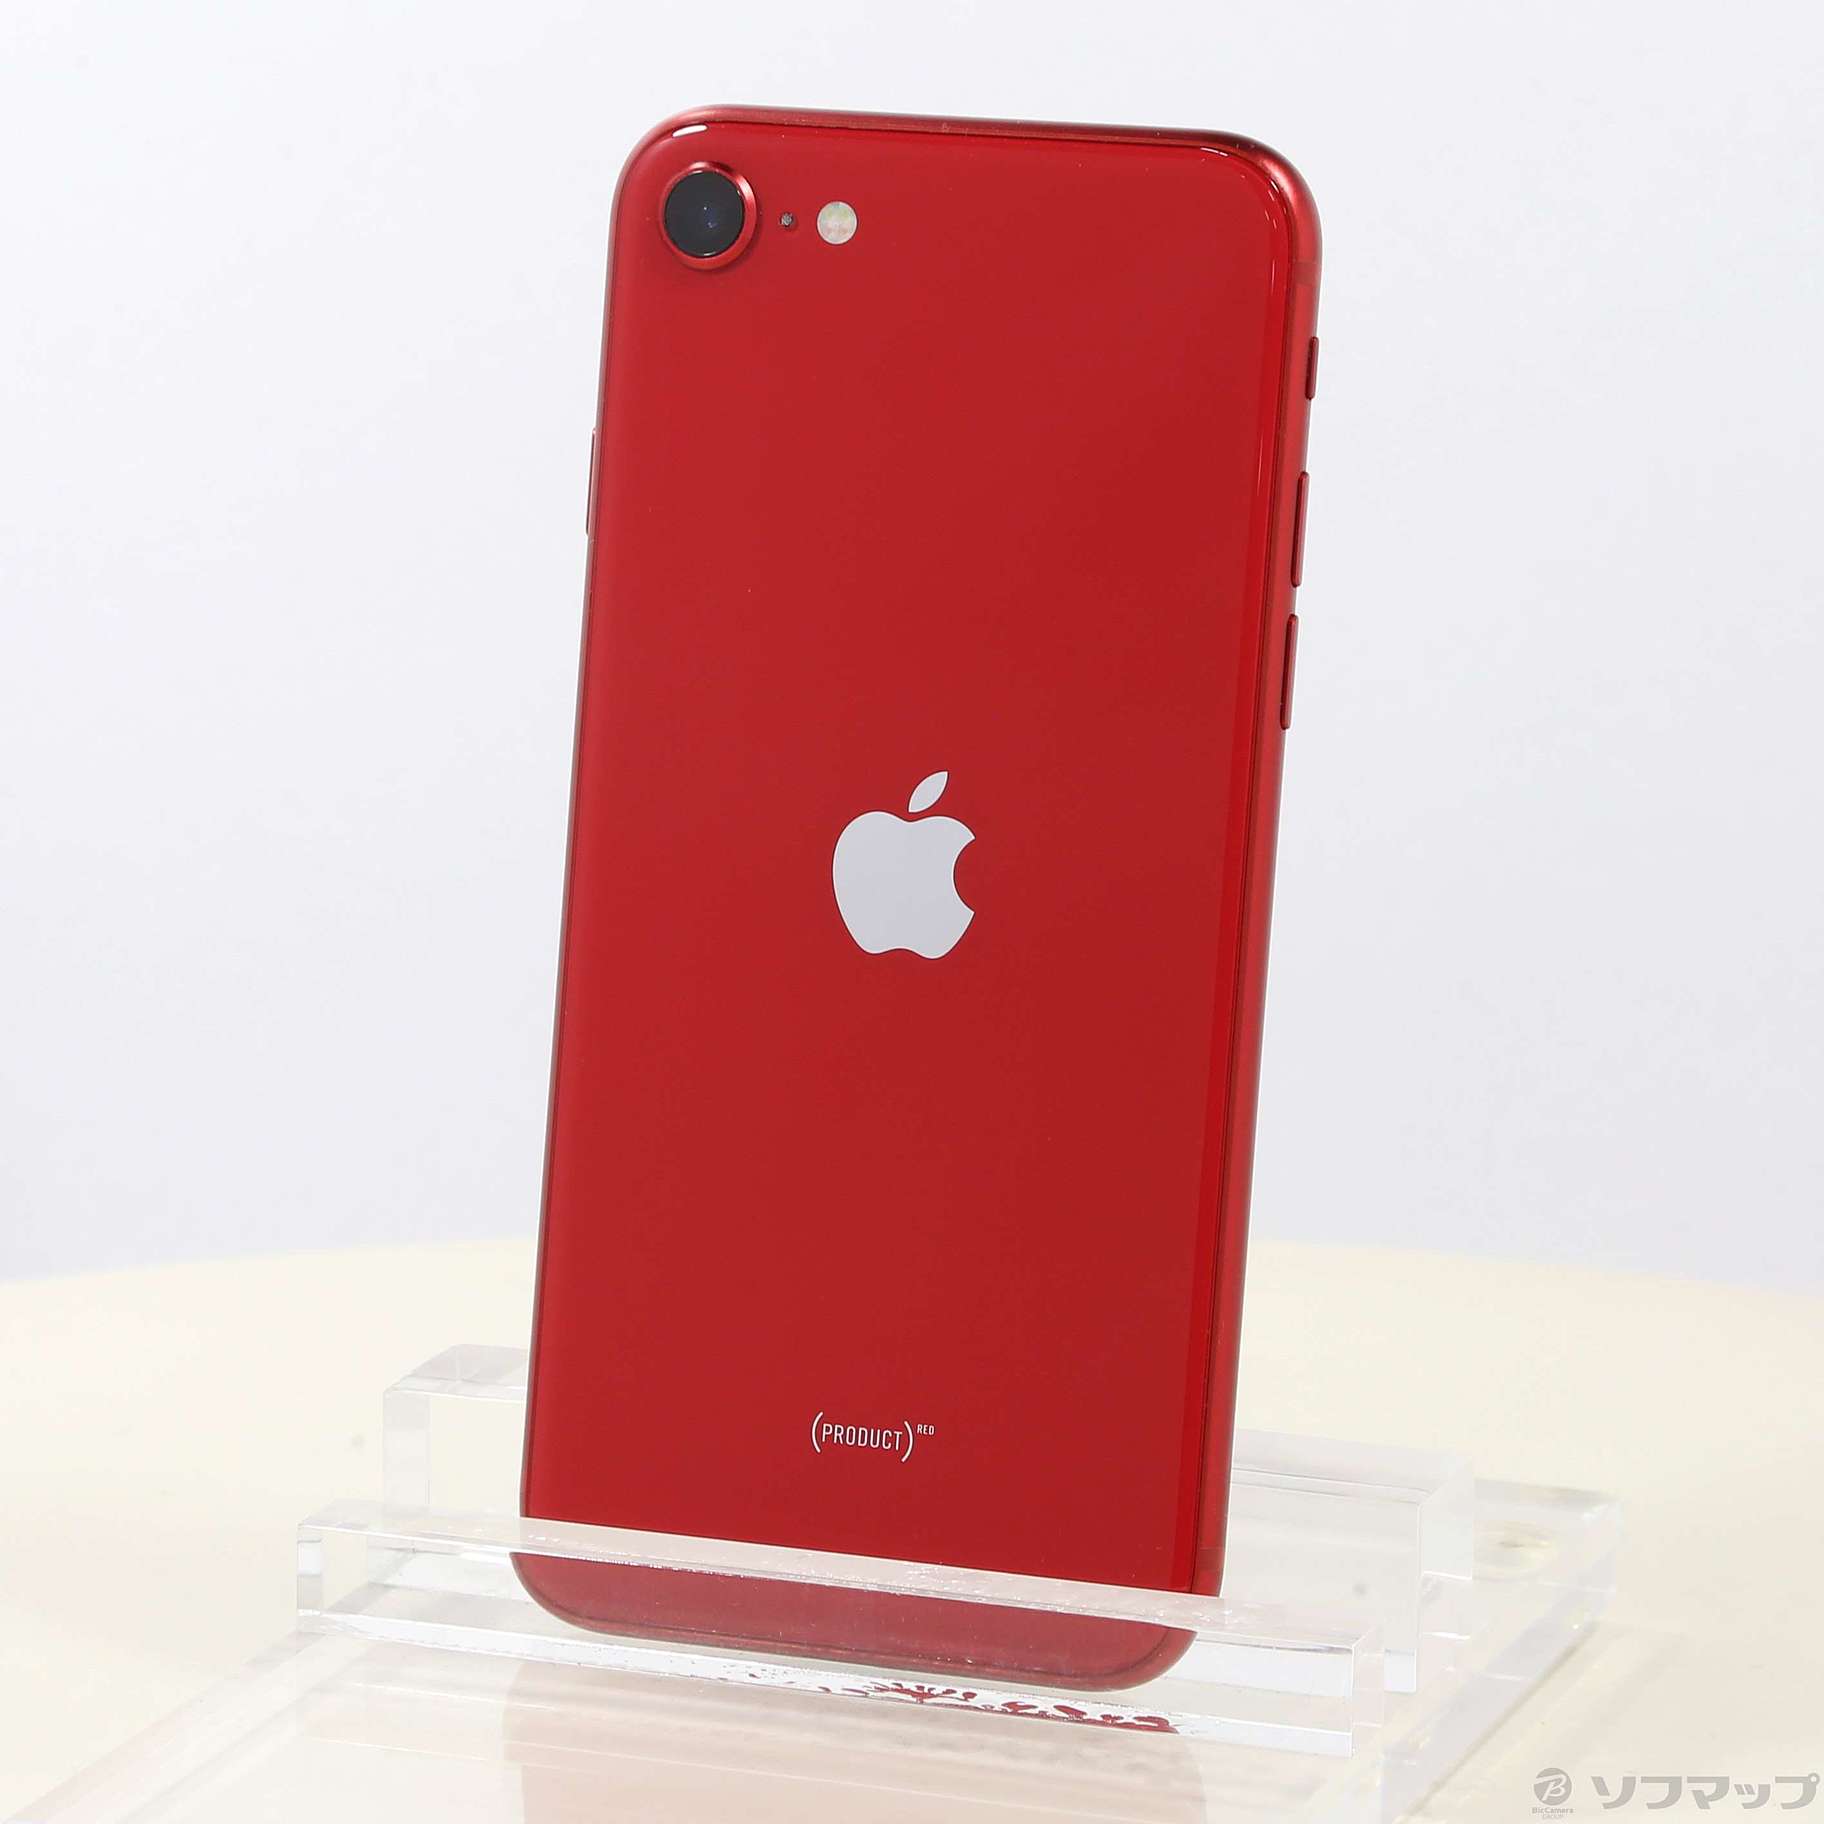 アップル iPhoneSE 第2世代 64GB レッド有機種対応機種